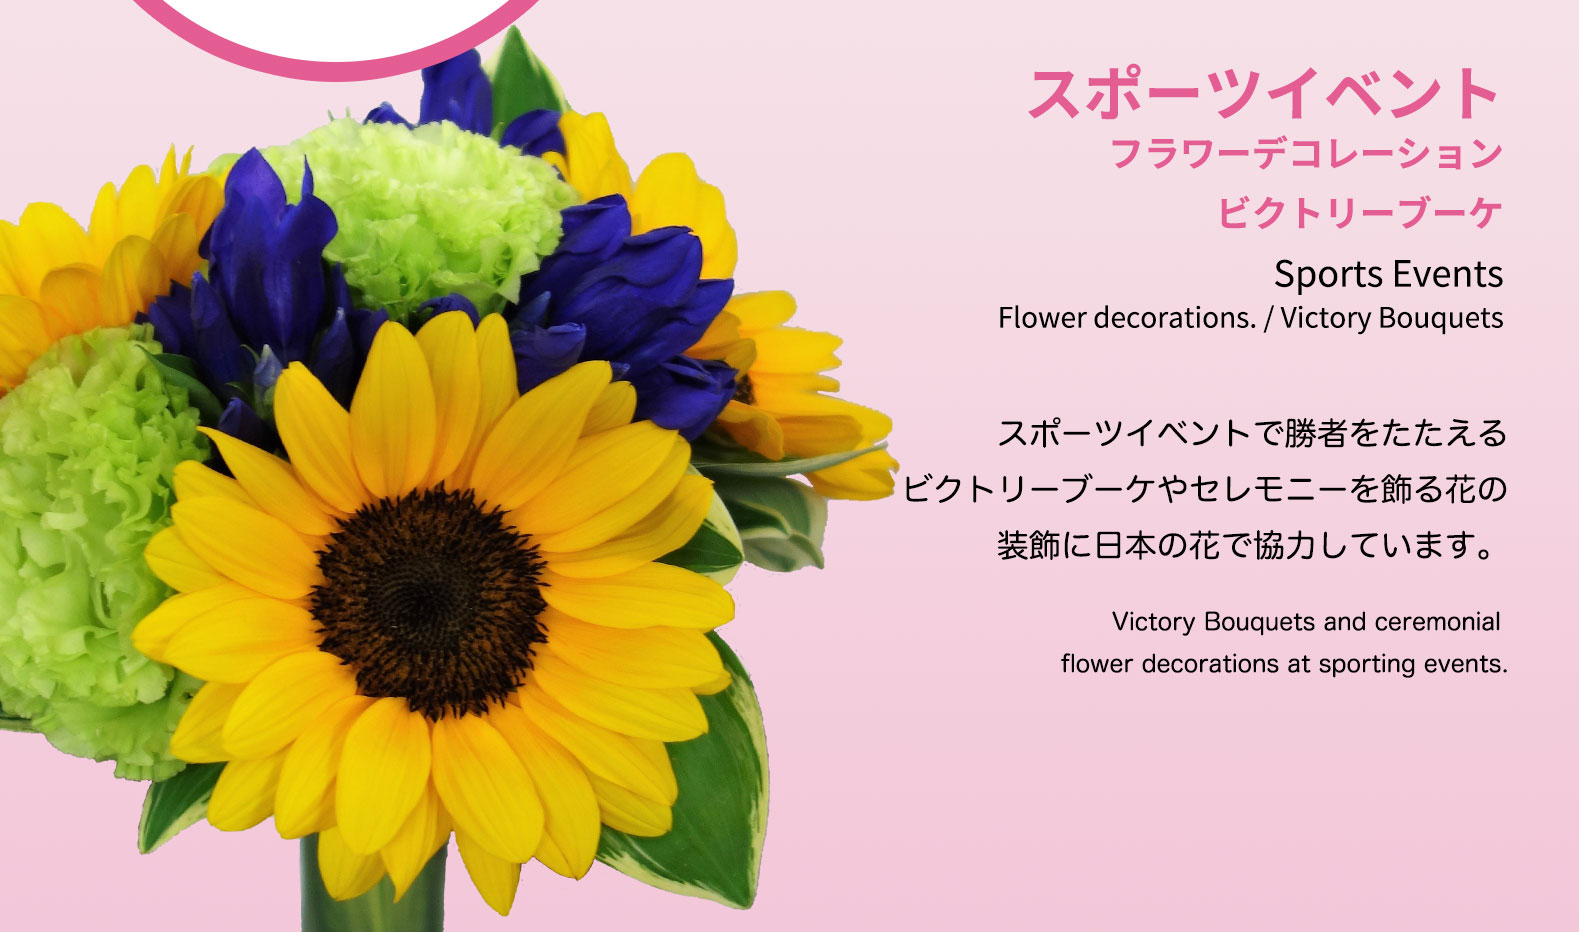 スポーツイベント フラワーデコレーション ビクトリーブーケ Sports Events Flower decorations. スポーツイベントで勝者をたたえるビクトリーブーケやセレモニーを飾る花の装飾に日本の花で協力しています。Victory Bouquets and ceremonial flower decorations at sporting events.